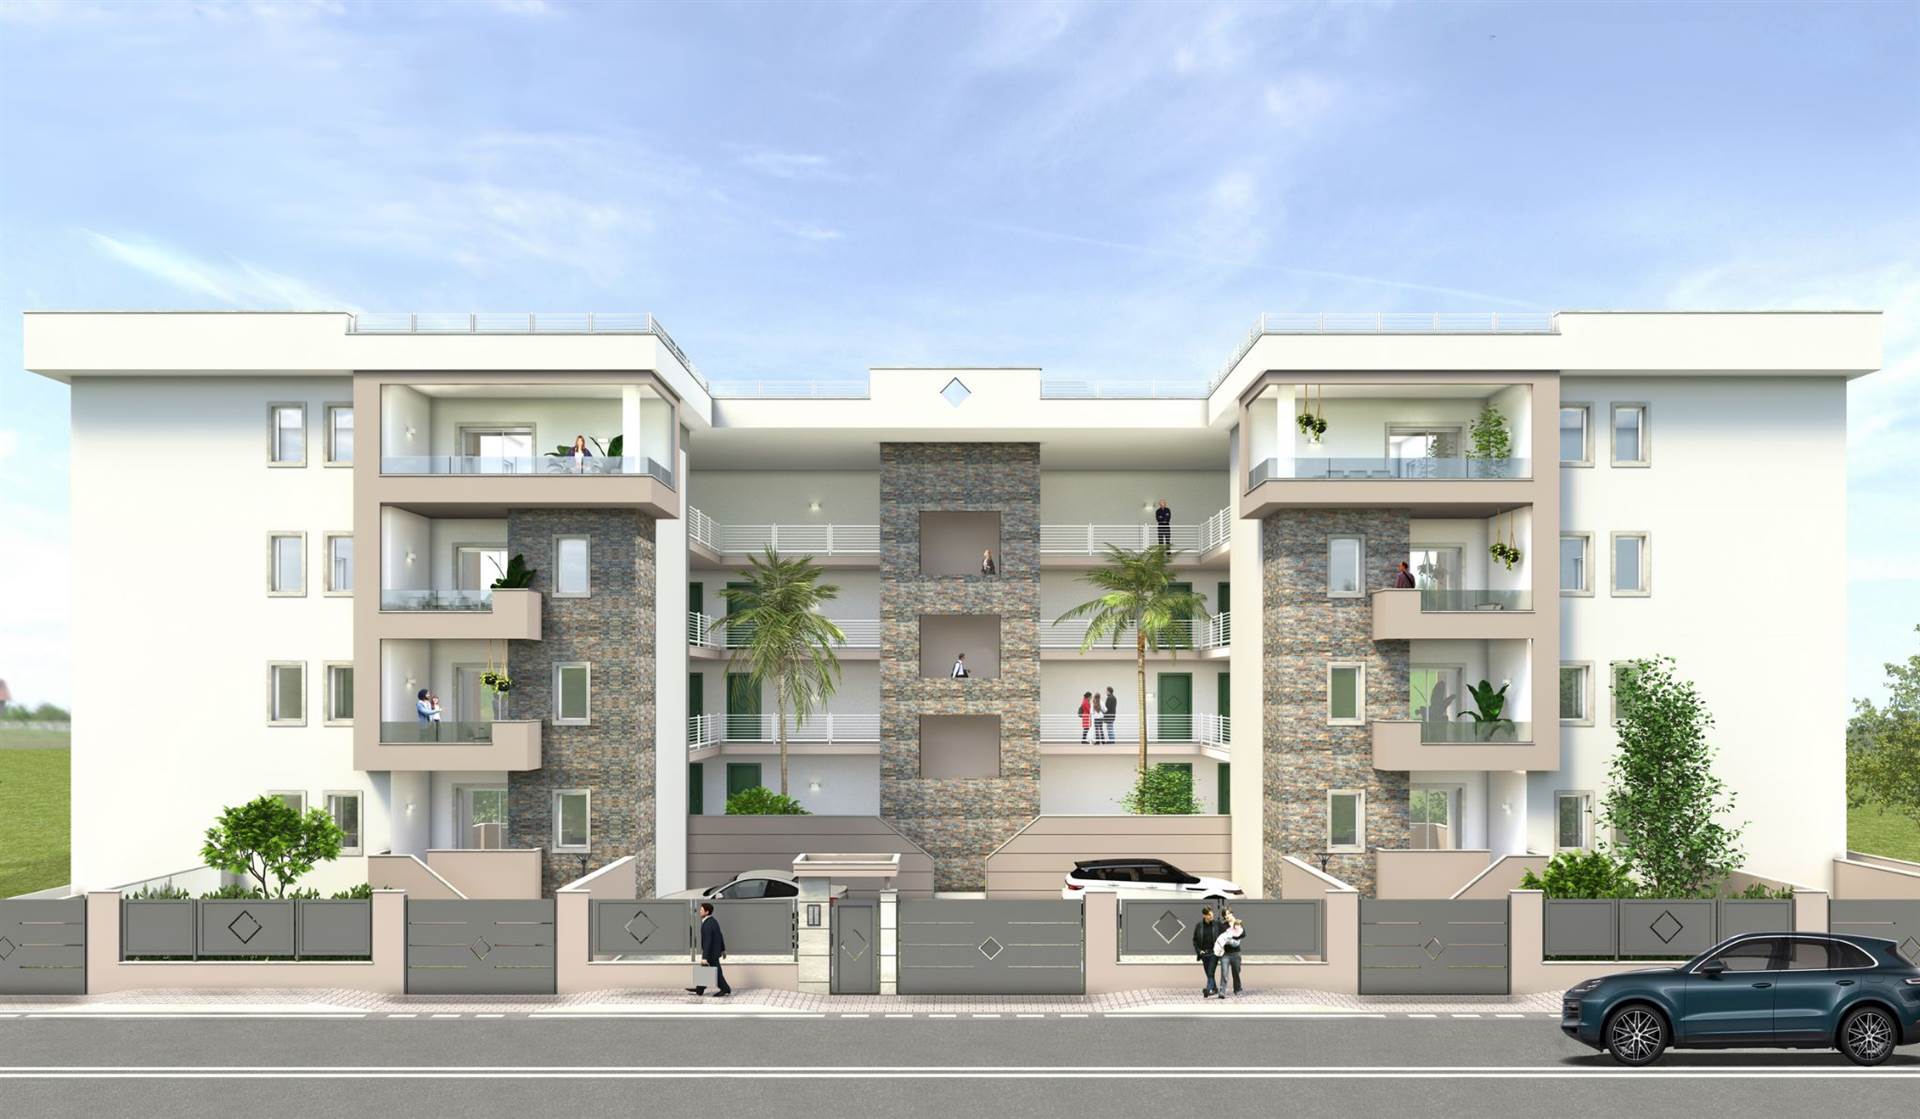 L'agenzia Cerco Casa propone in vendita nel Comune di Sermoneta zona Borgata Carrara appartamenti di prossima realizzazione. Disponibilità: - 